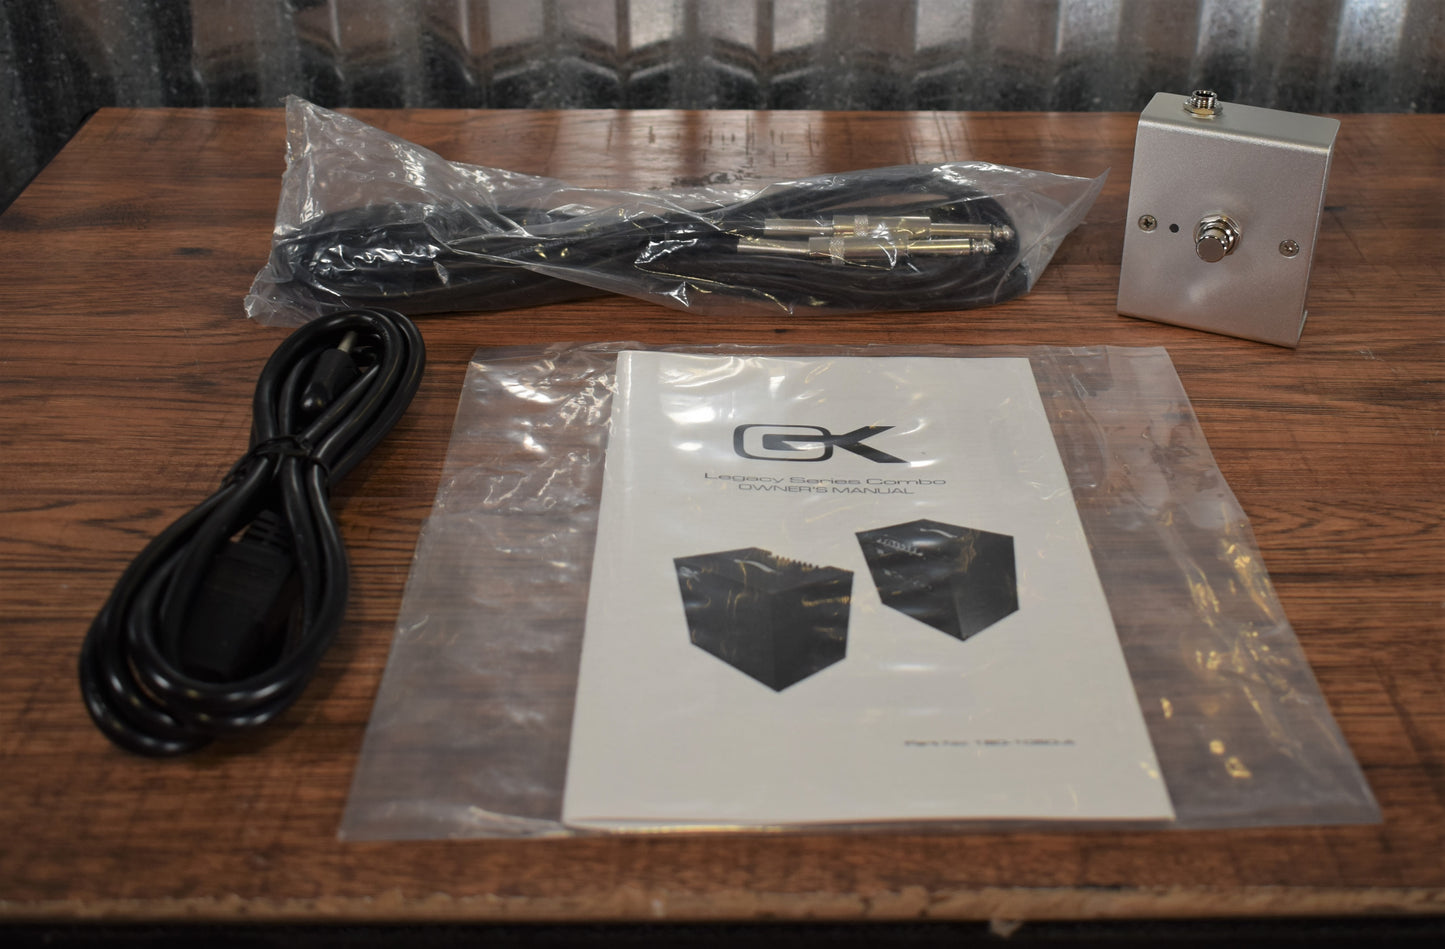 Gallien-Krueger GK Legacy 112 500 Watt 1x12" Ultralight Bass Combo Amplifier with Overdrive